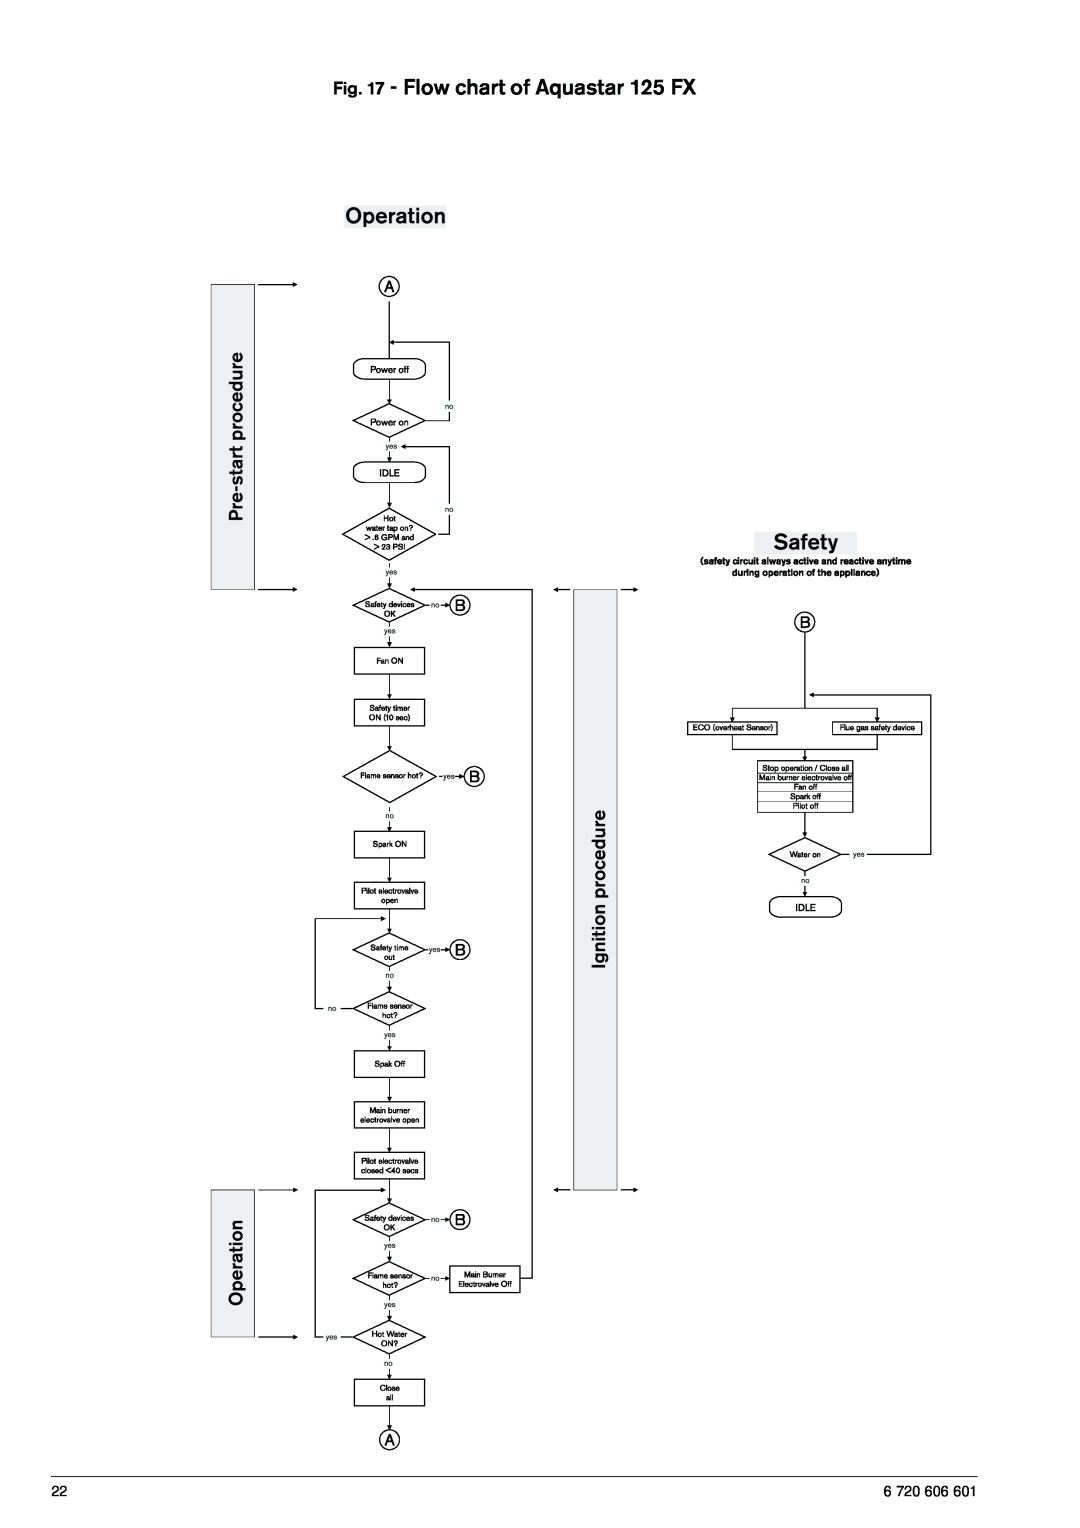 AquaStar 125FX NG, 125FX LP specifications Flow chart of Aquastar 125 FX, 6 720 606 